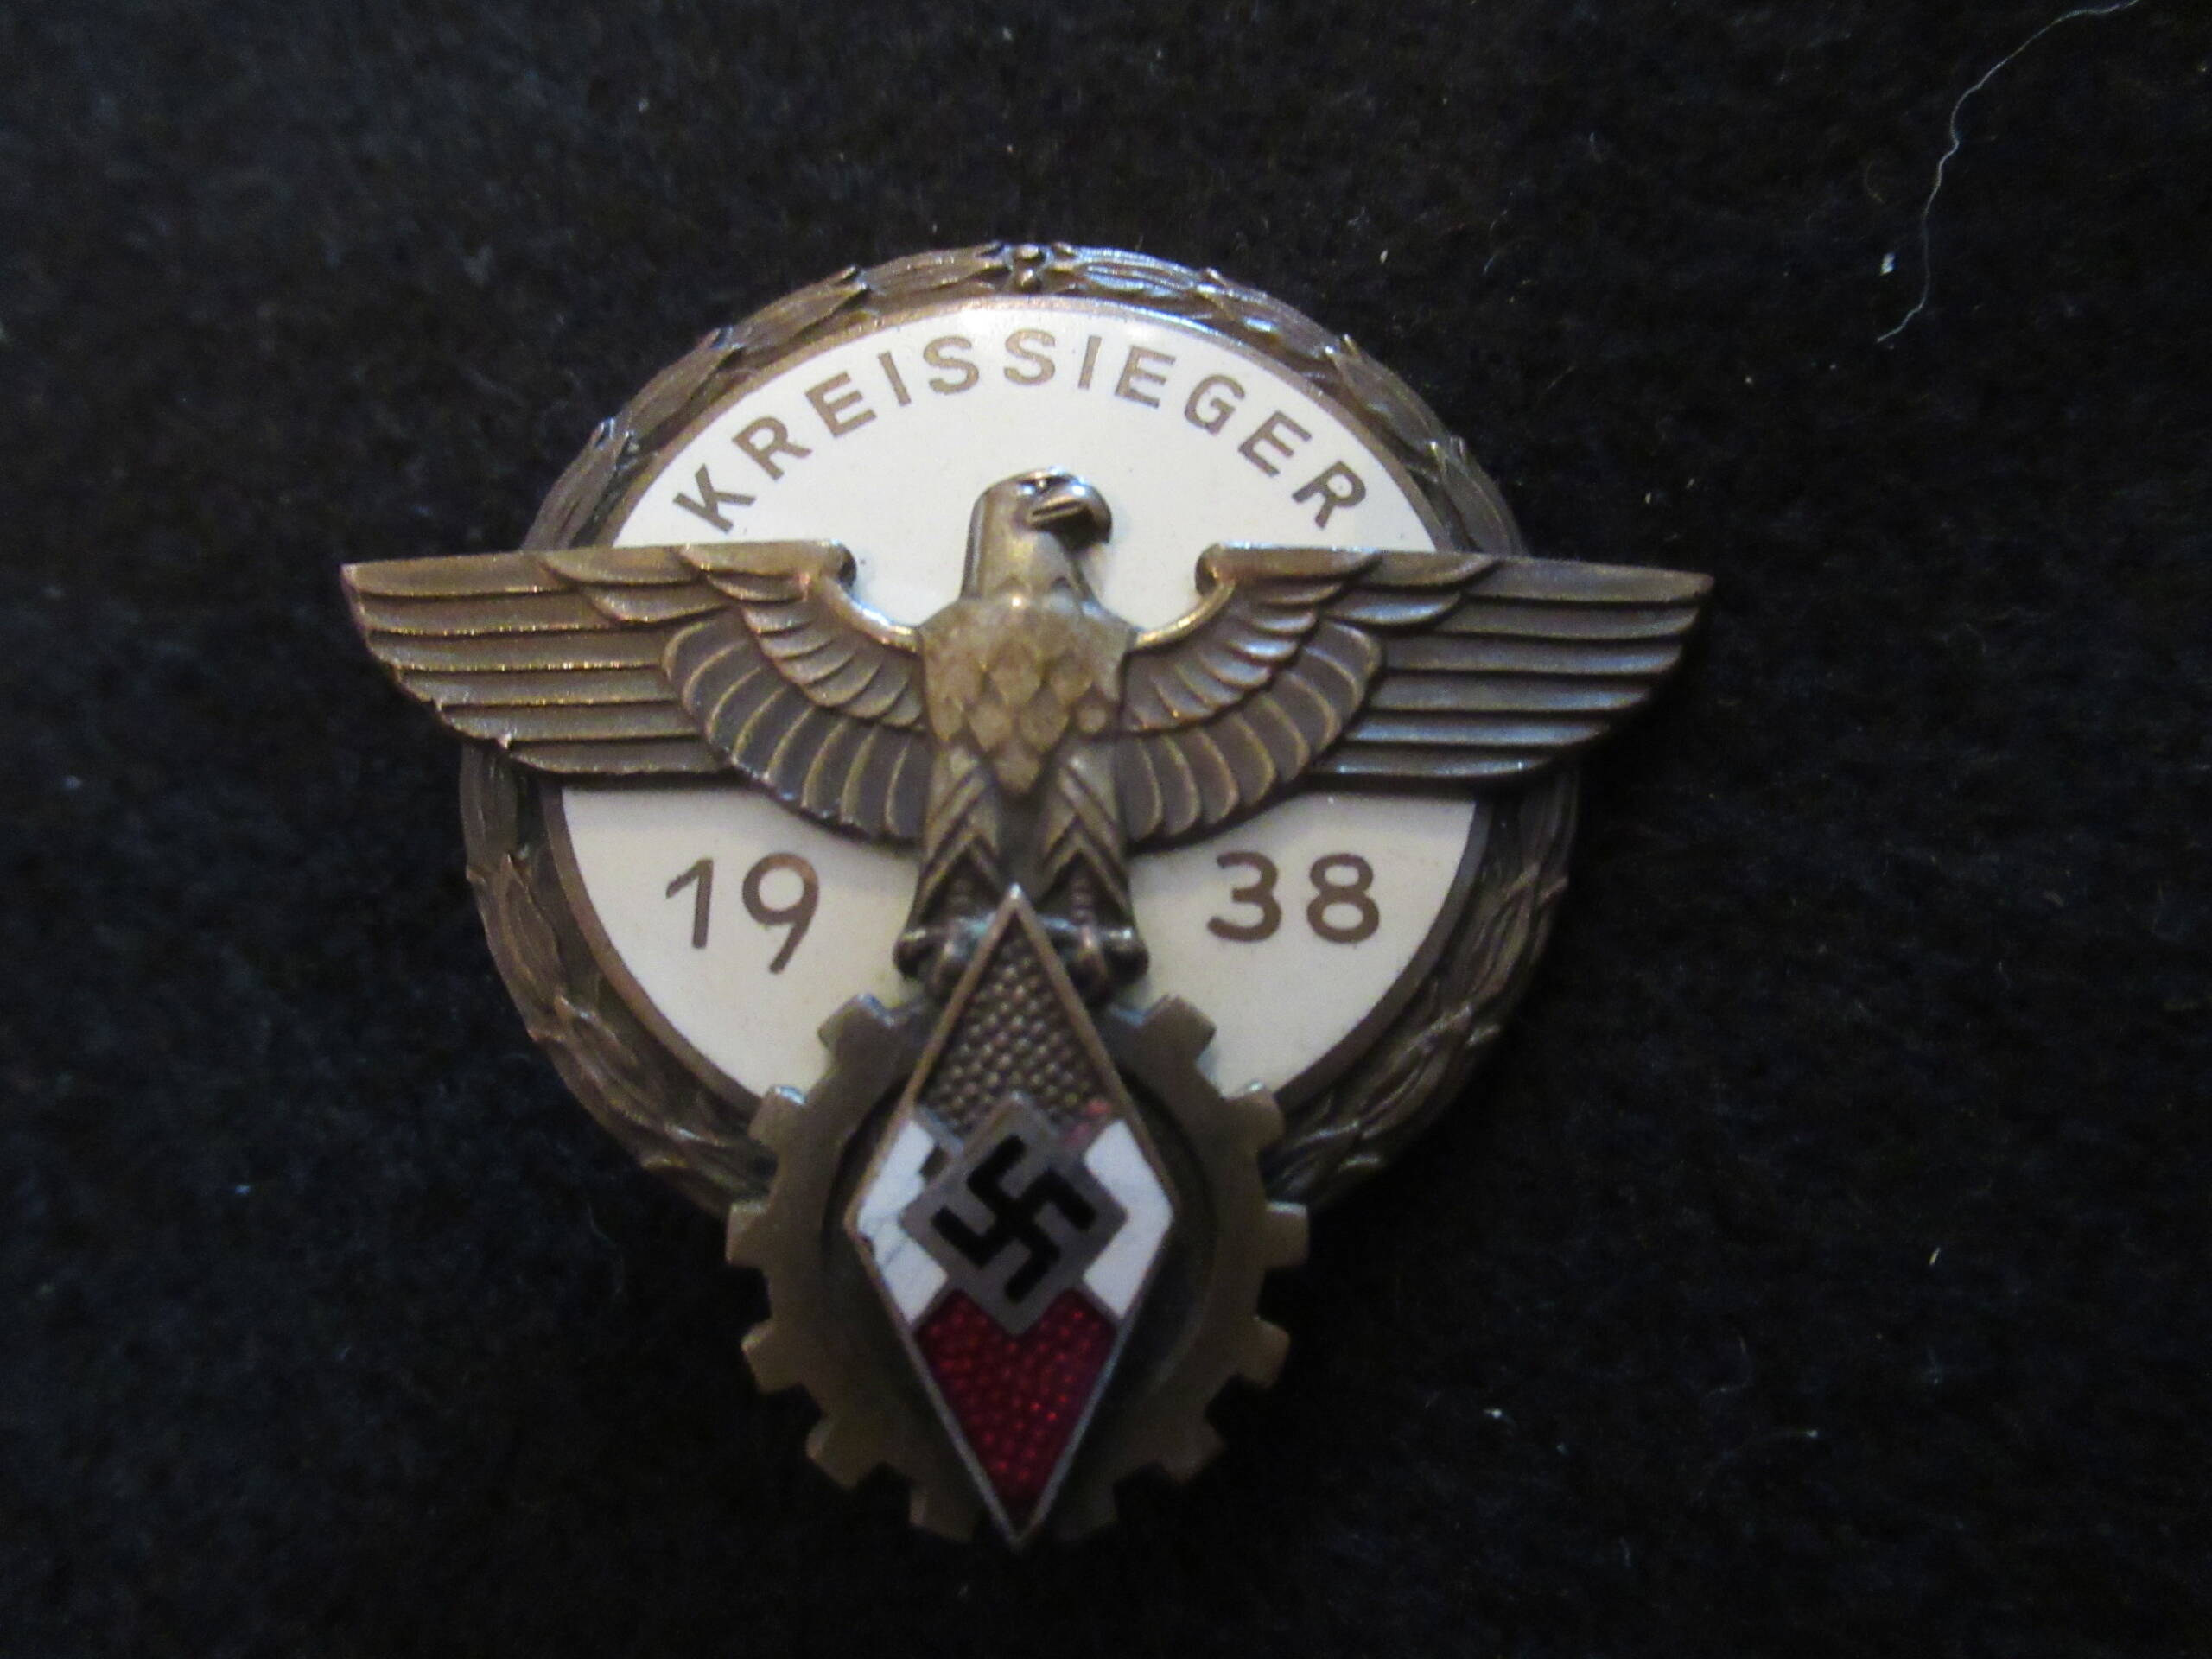 HJ Kriegsieger badge for 1938